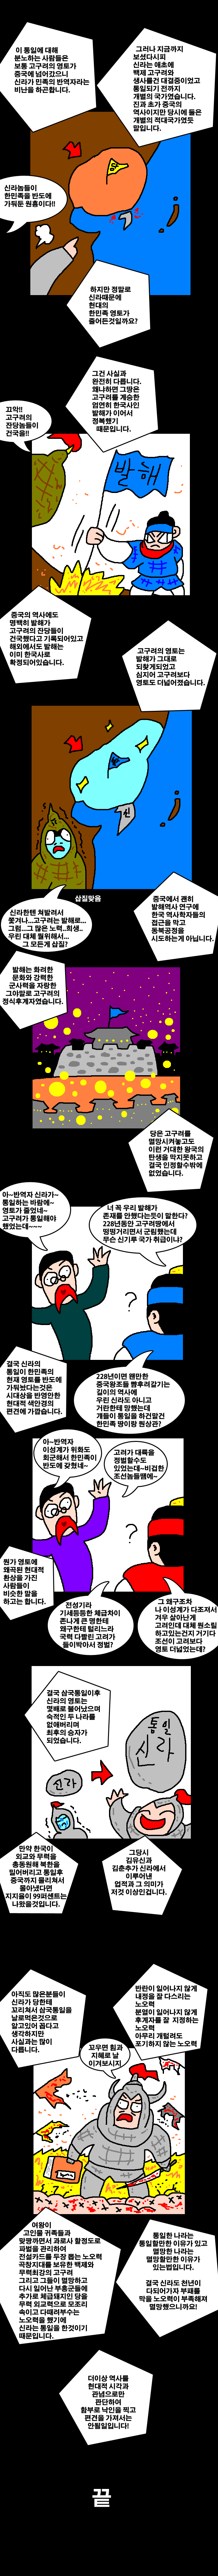 통일 신라탓에 땅 작아졌다는게 헛소리라는 만화.jpg